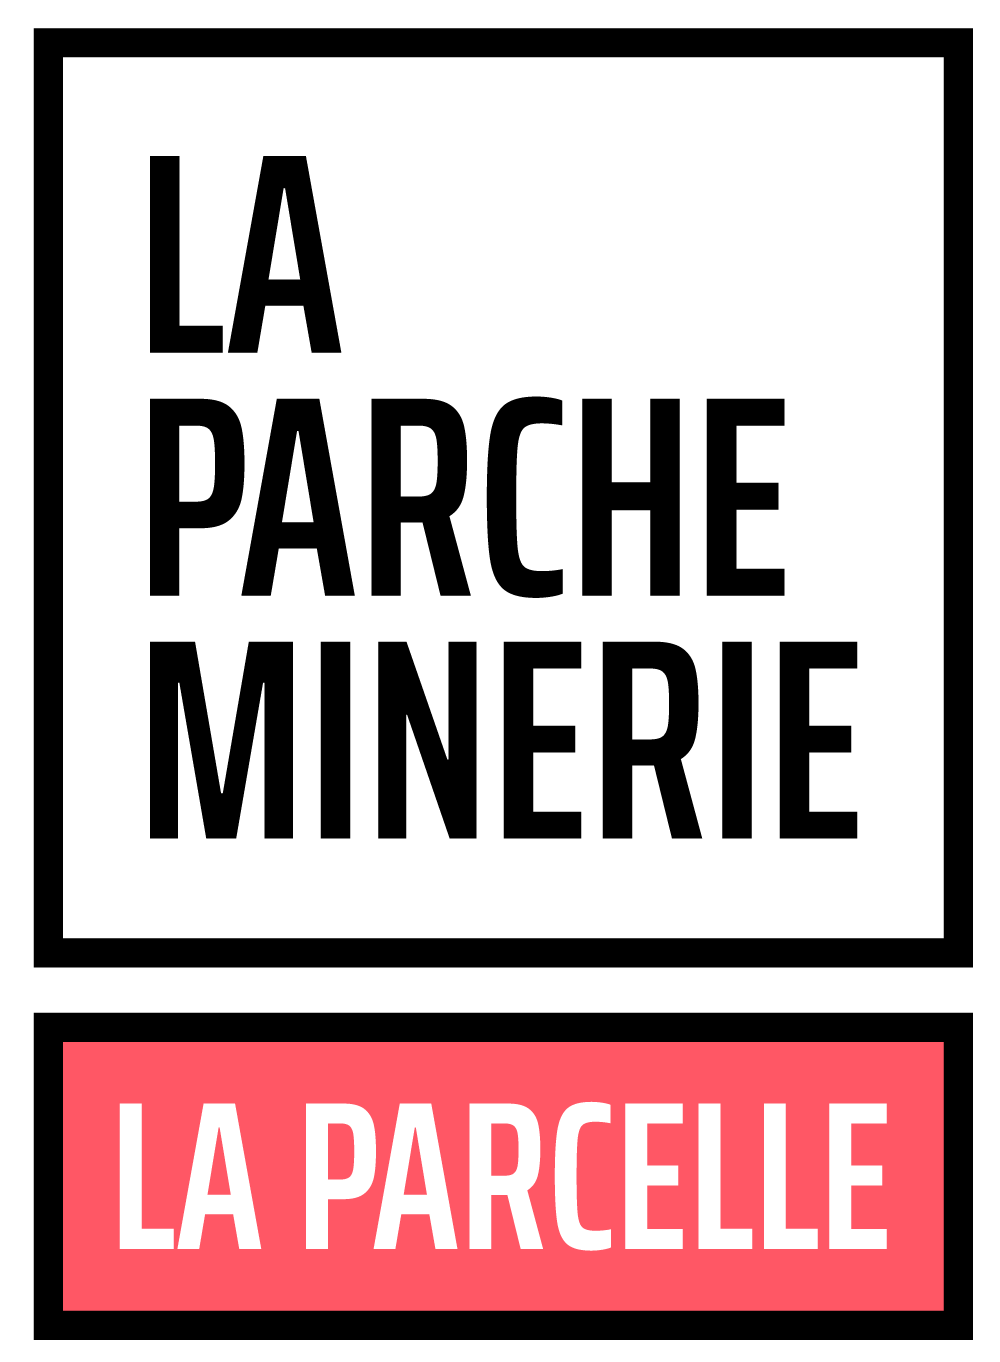 laparcelle_logo_parcheminerie